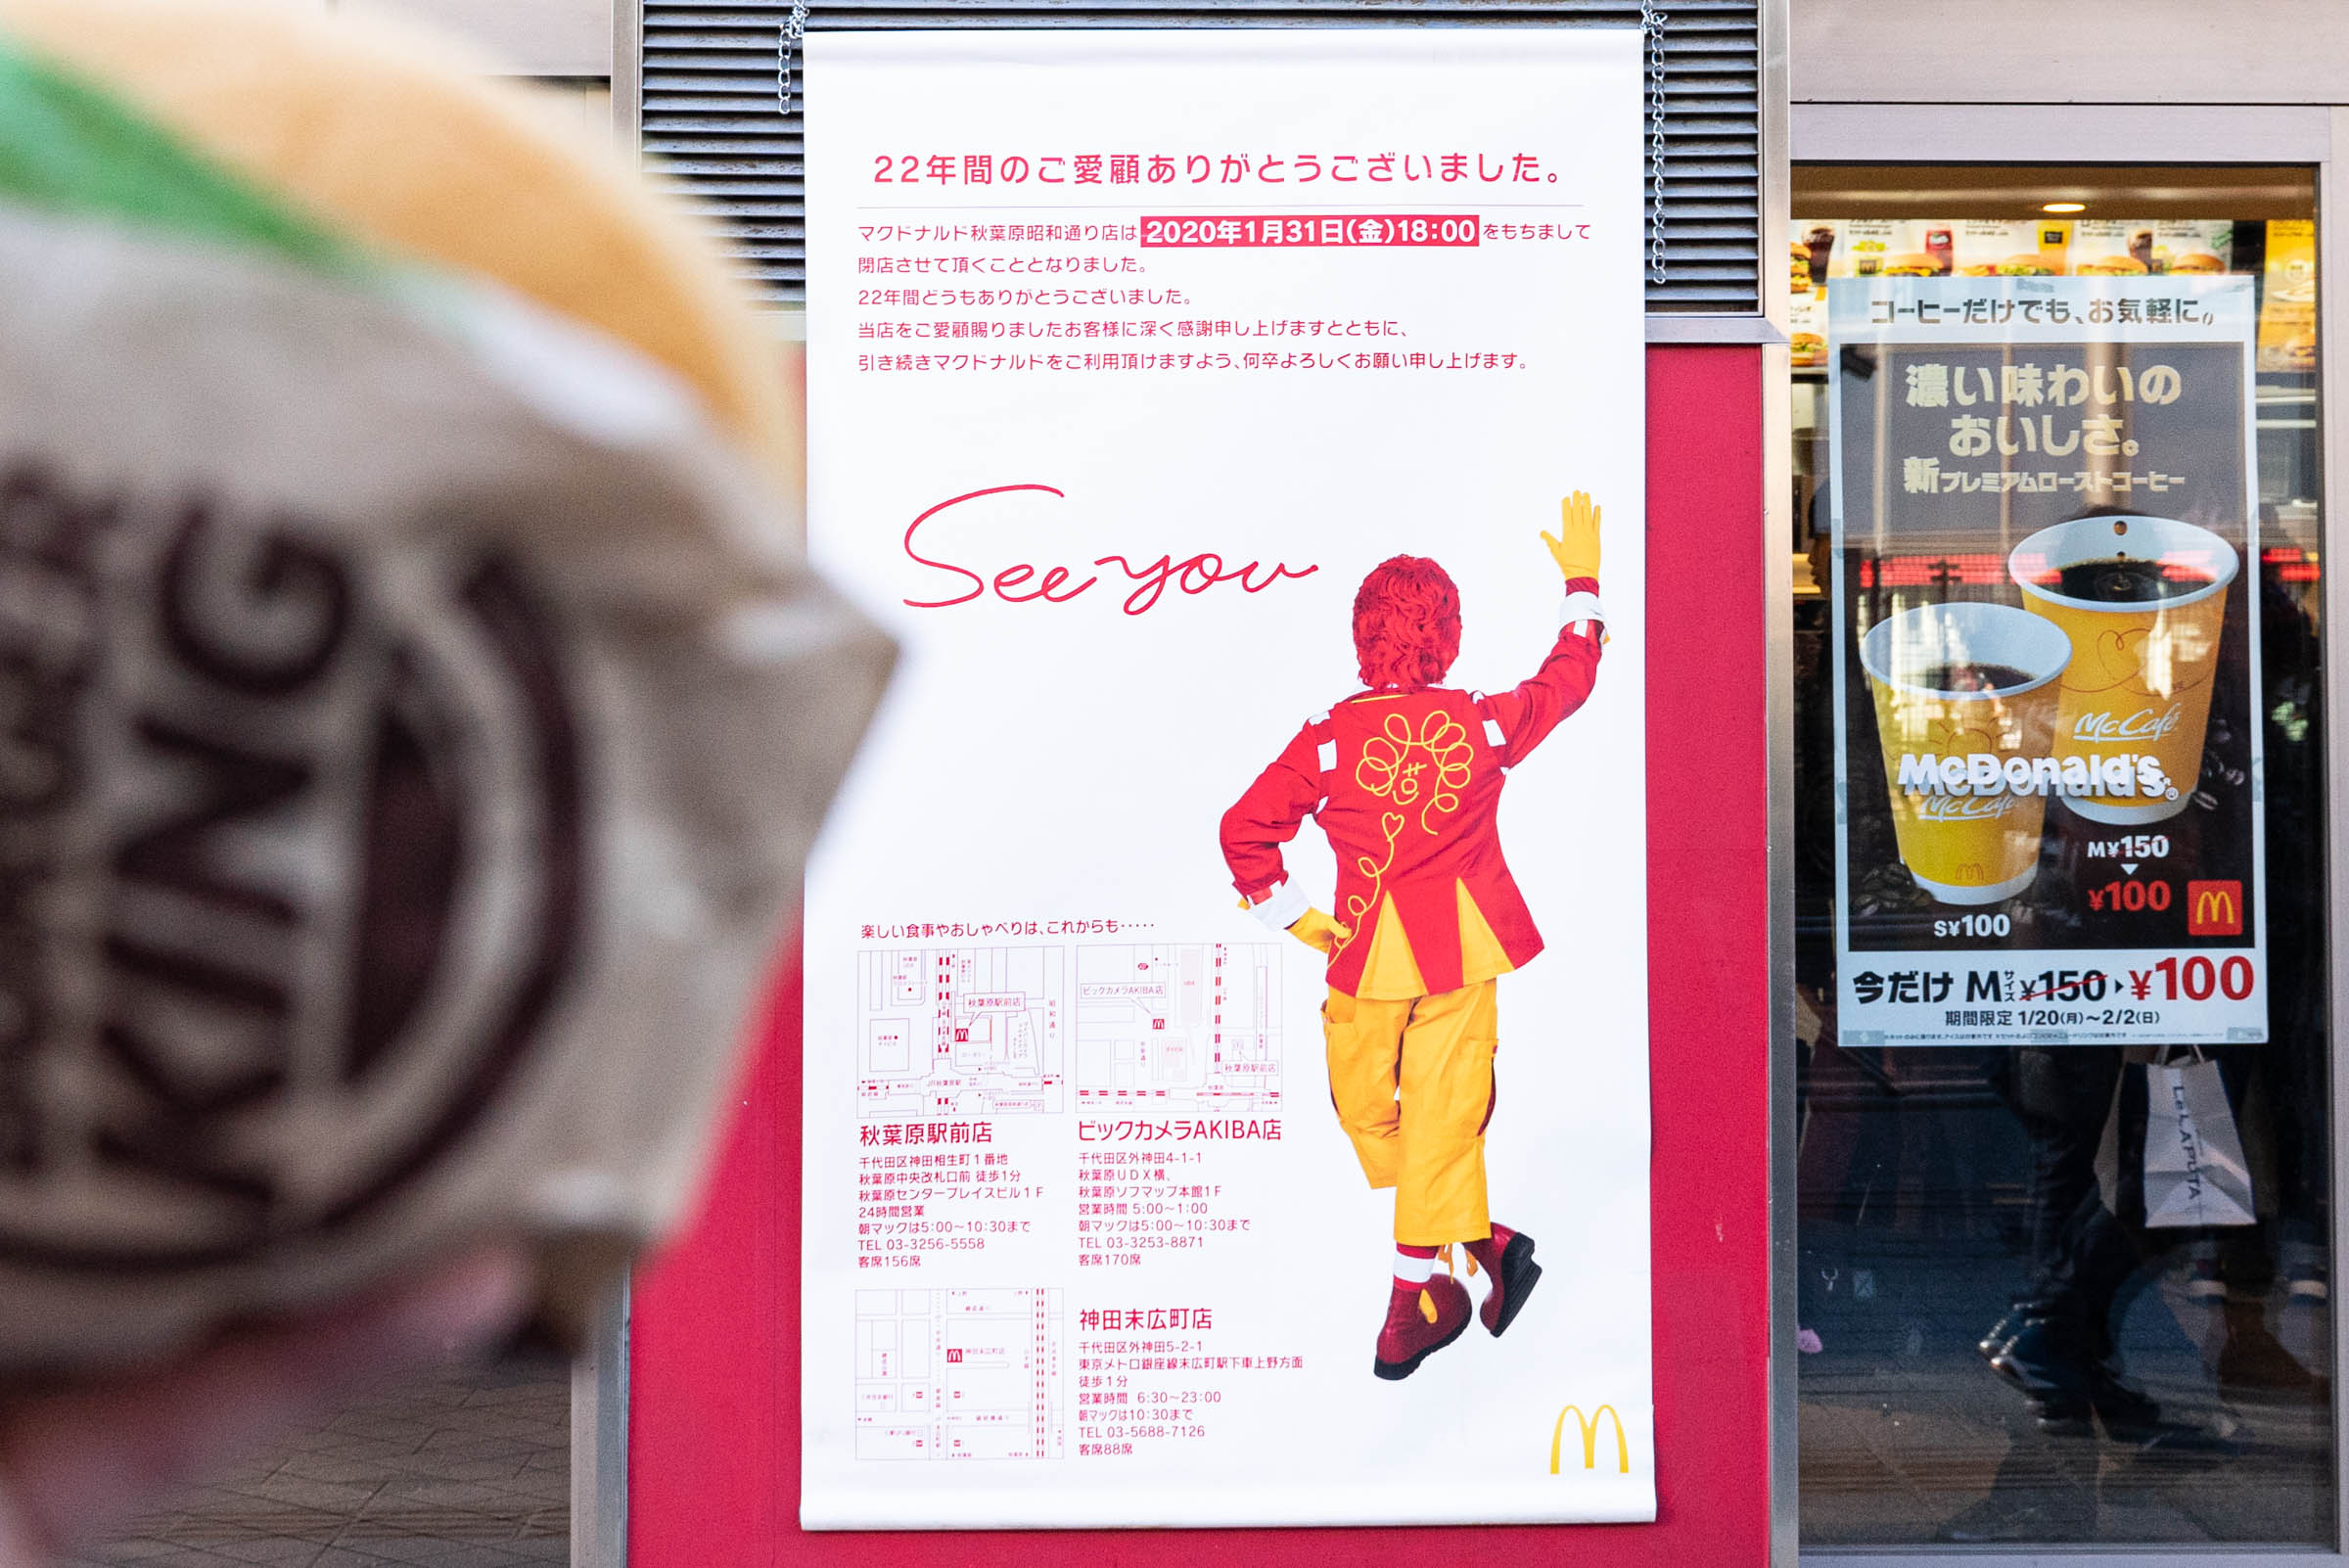 閉店する秋葉原のマクドナルド昭和通り店をバーガーキングが煽りまくる マックがかわいそうなのでビッグマックを掲げて別れを告げてきた ロケットニュース24